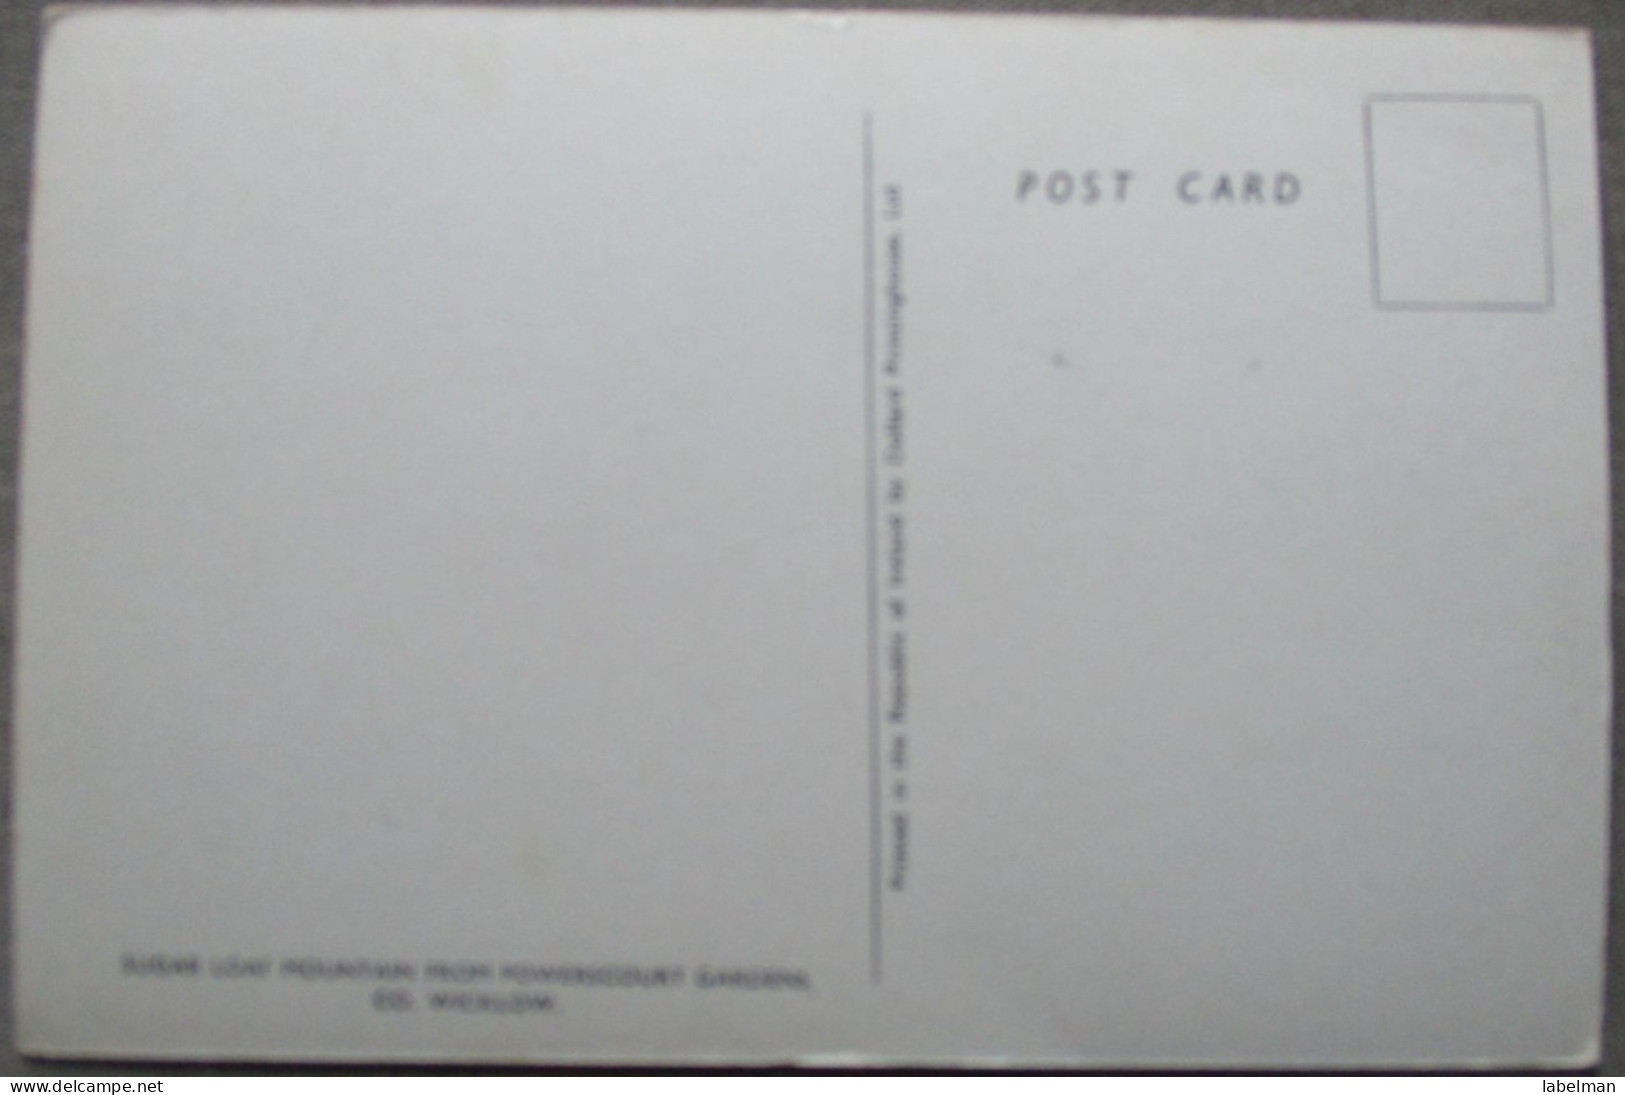 IRLAND UK UNITED KINGDOM WICKLOW SUGAR LOAF MT KARTE CARD POSTKARTE POSTCARD ANSICHTSKARTE CARTOLINA CARTE POSTALE - Colecciones Y Lotes